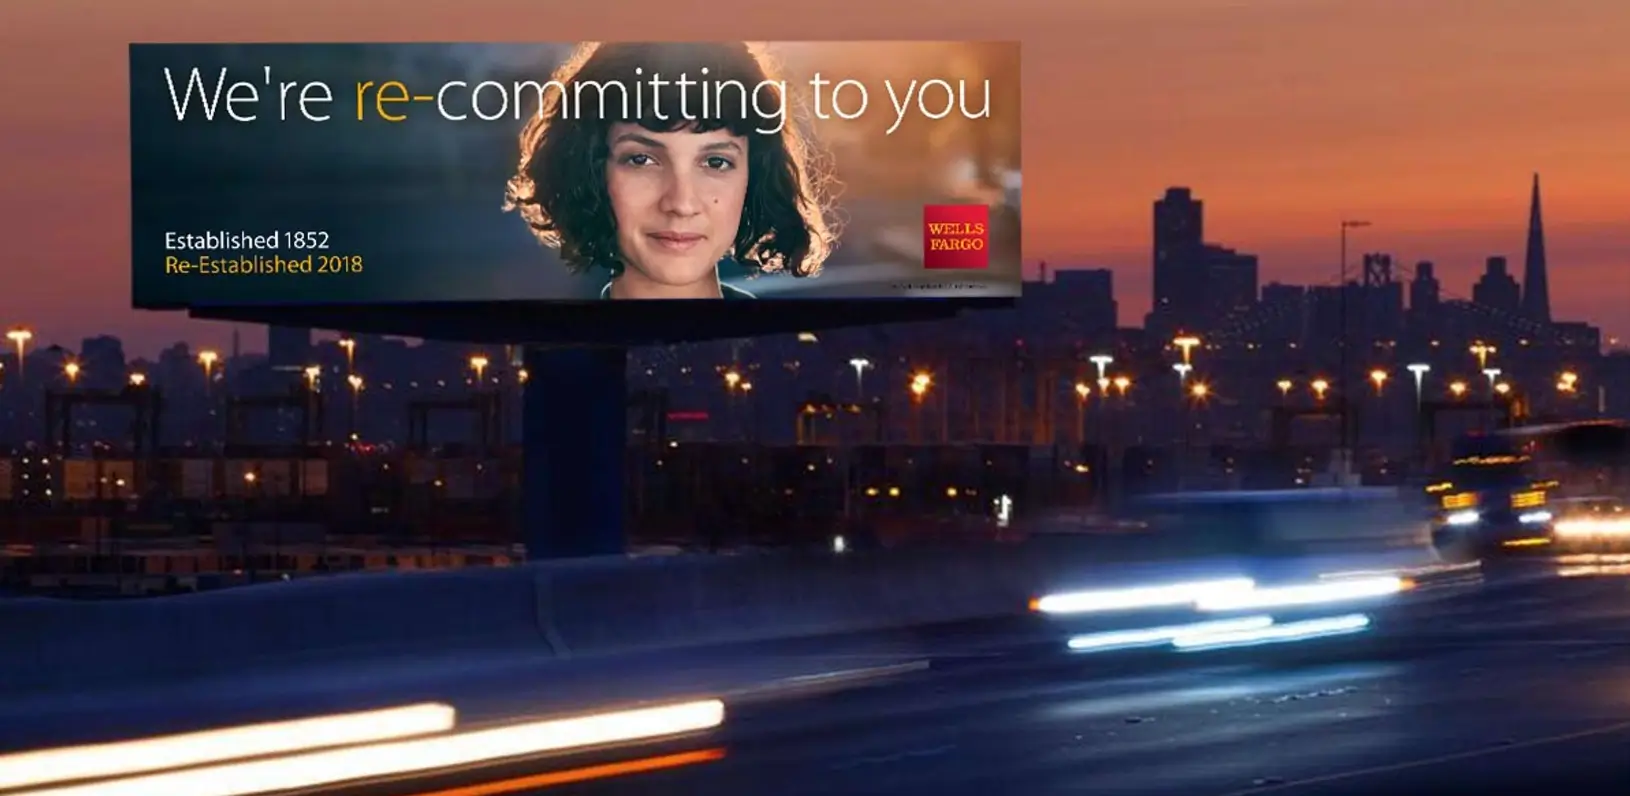 Gambar ini menunjukkan kampanye "Re-Established" Wells Fargo, yang diluncurkan dari tahun 2017 hingga 2019, yang bertujuan untuk mendapatkan kembali kepercayaan pelanggan setelah klaim penipuan. Dengan menggunakan video, iklan, dan postingan sosial, mereka menyoroti teknologi inovatif dan pengalaman yang dipersonalisasi untuk membedakannya dari pesaing.